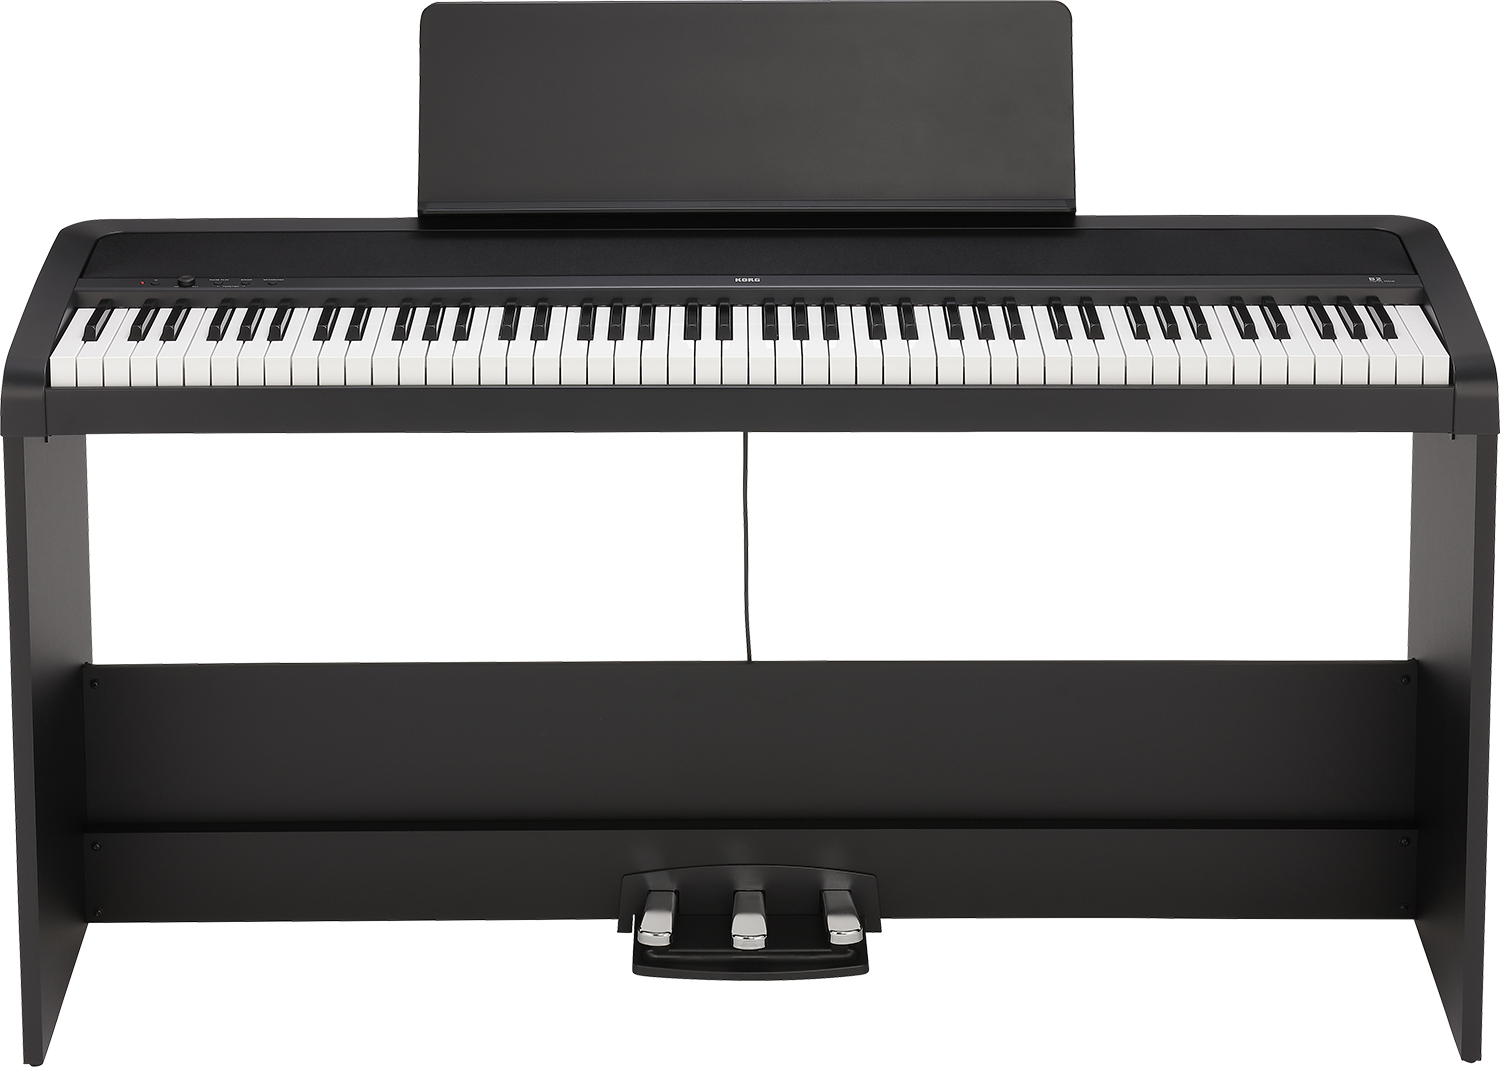 Le tabouret piano est un élément crucial pour jouer de l'instrument.